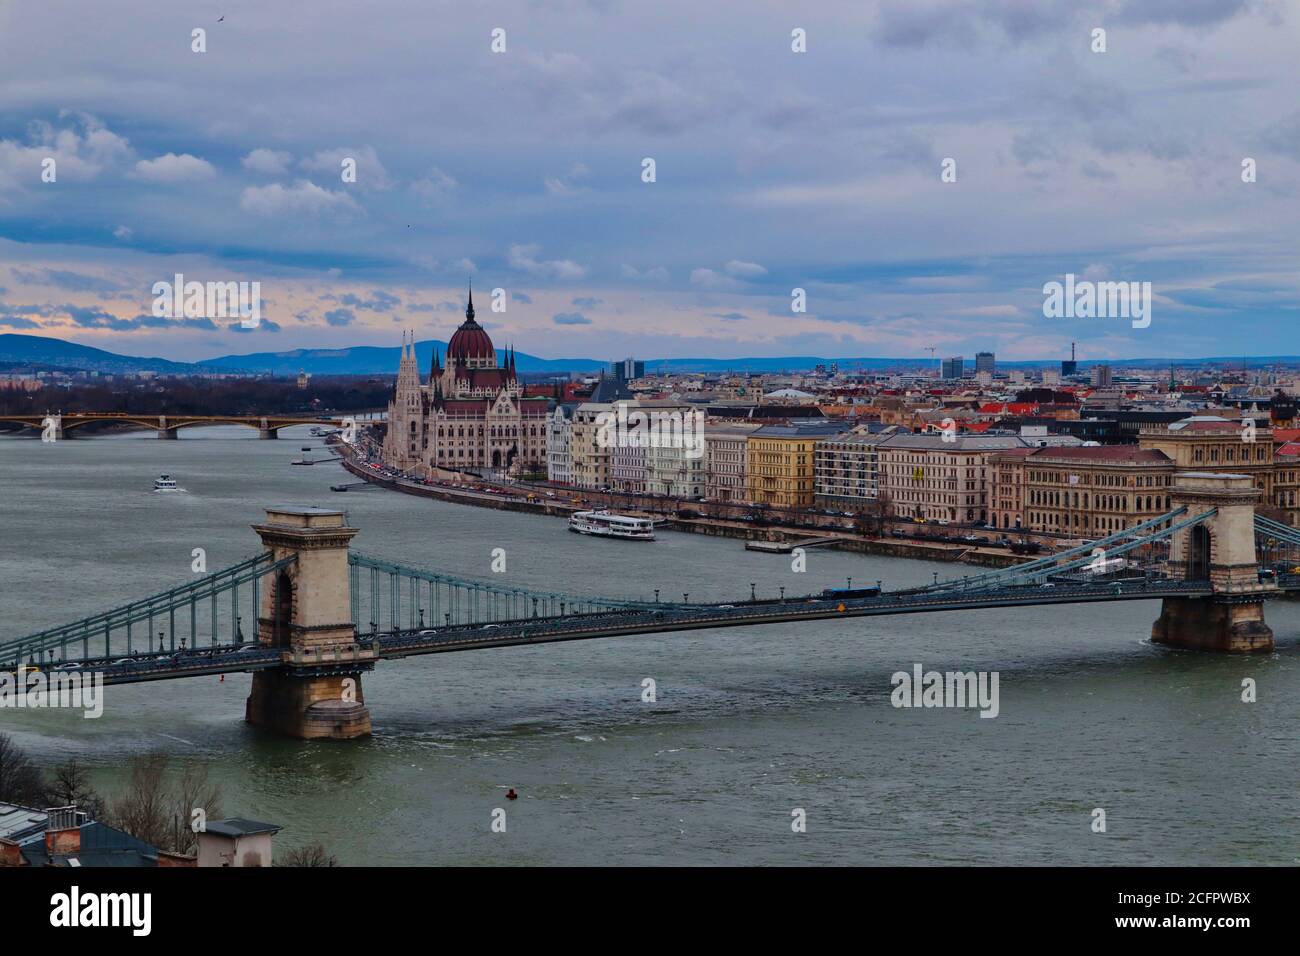 Vista aerea sul Ponte delle catene che conduce sul Danubio e sull'edificio del Parlamento ungherese in lontananza. Bellissimo cielo con vista sulla città di Budapest. Foto Stock